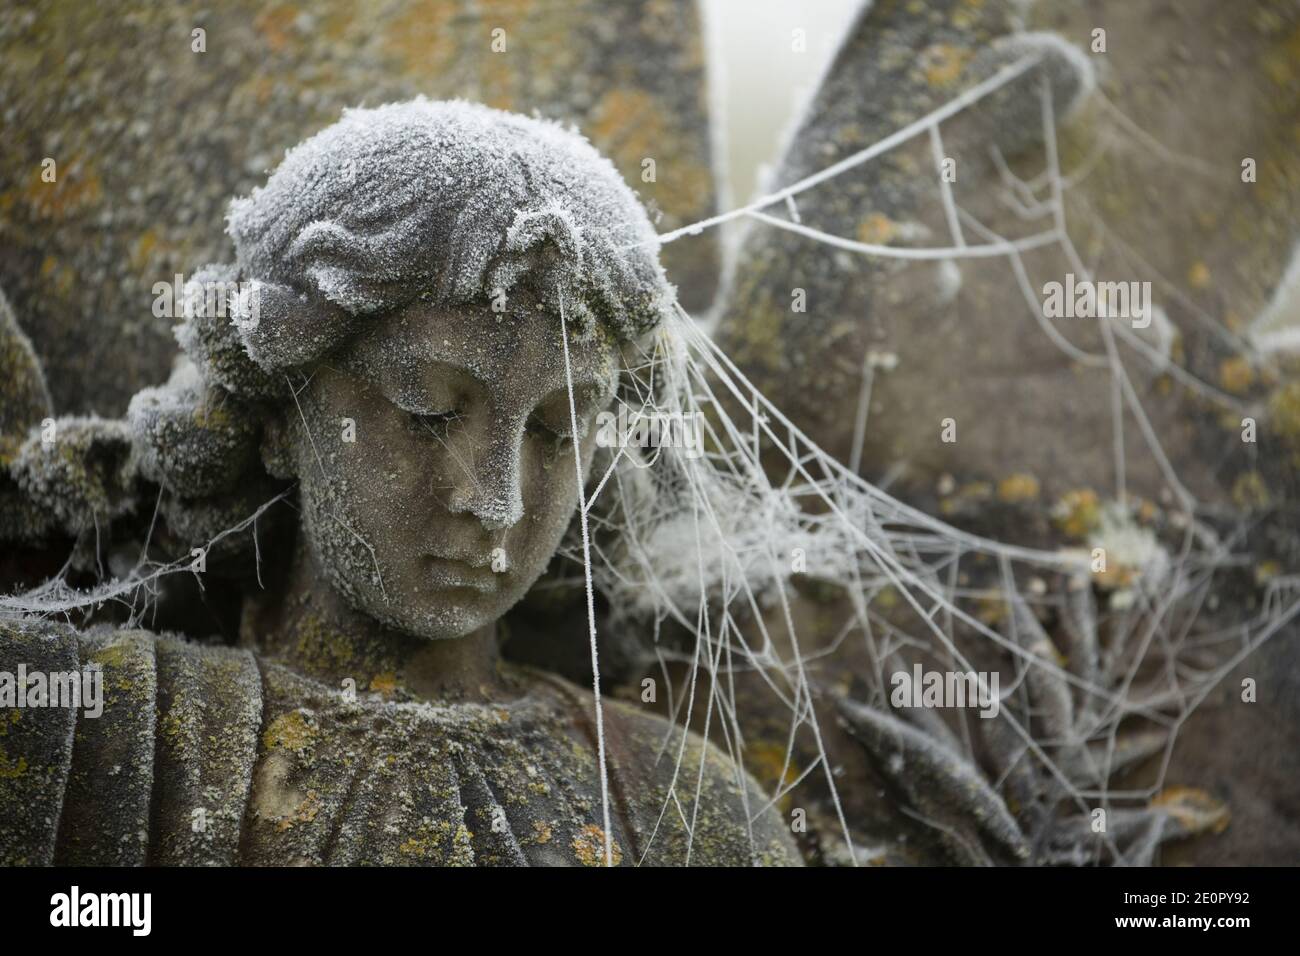 Un ange en pierre sculptée dans un jardin du souvenir couvert de givre et d’araignées s’enorme après une nuit de températures glaciales le jour de l’an 2021. Banque D'Images